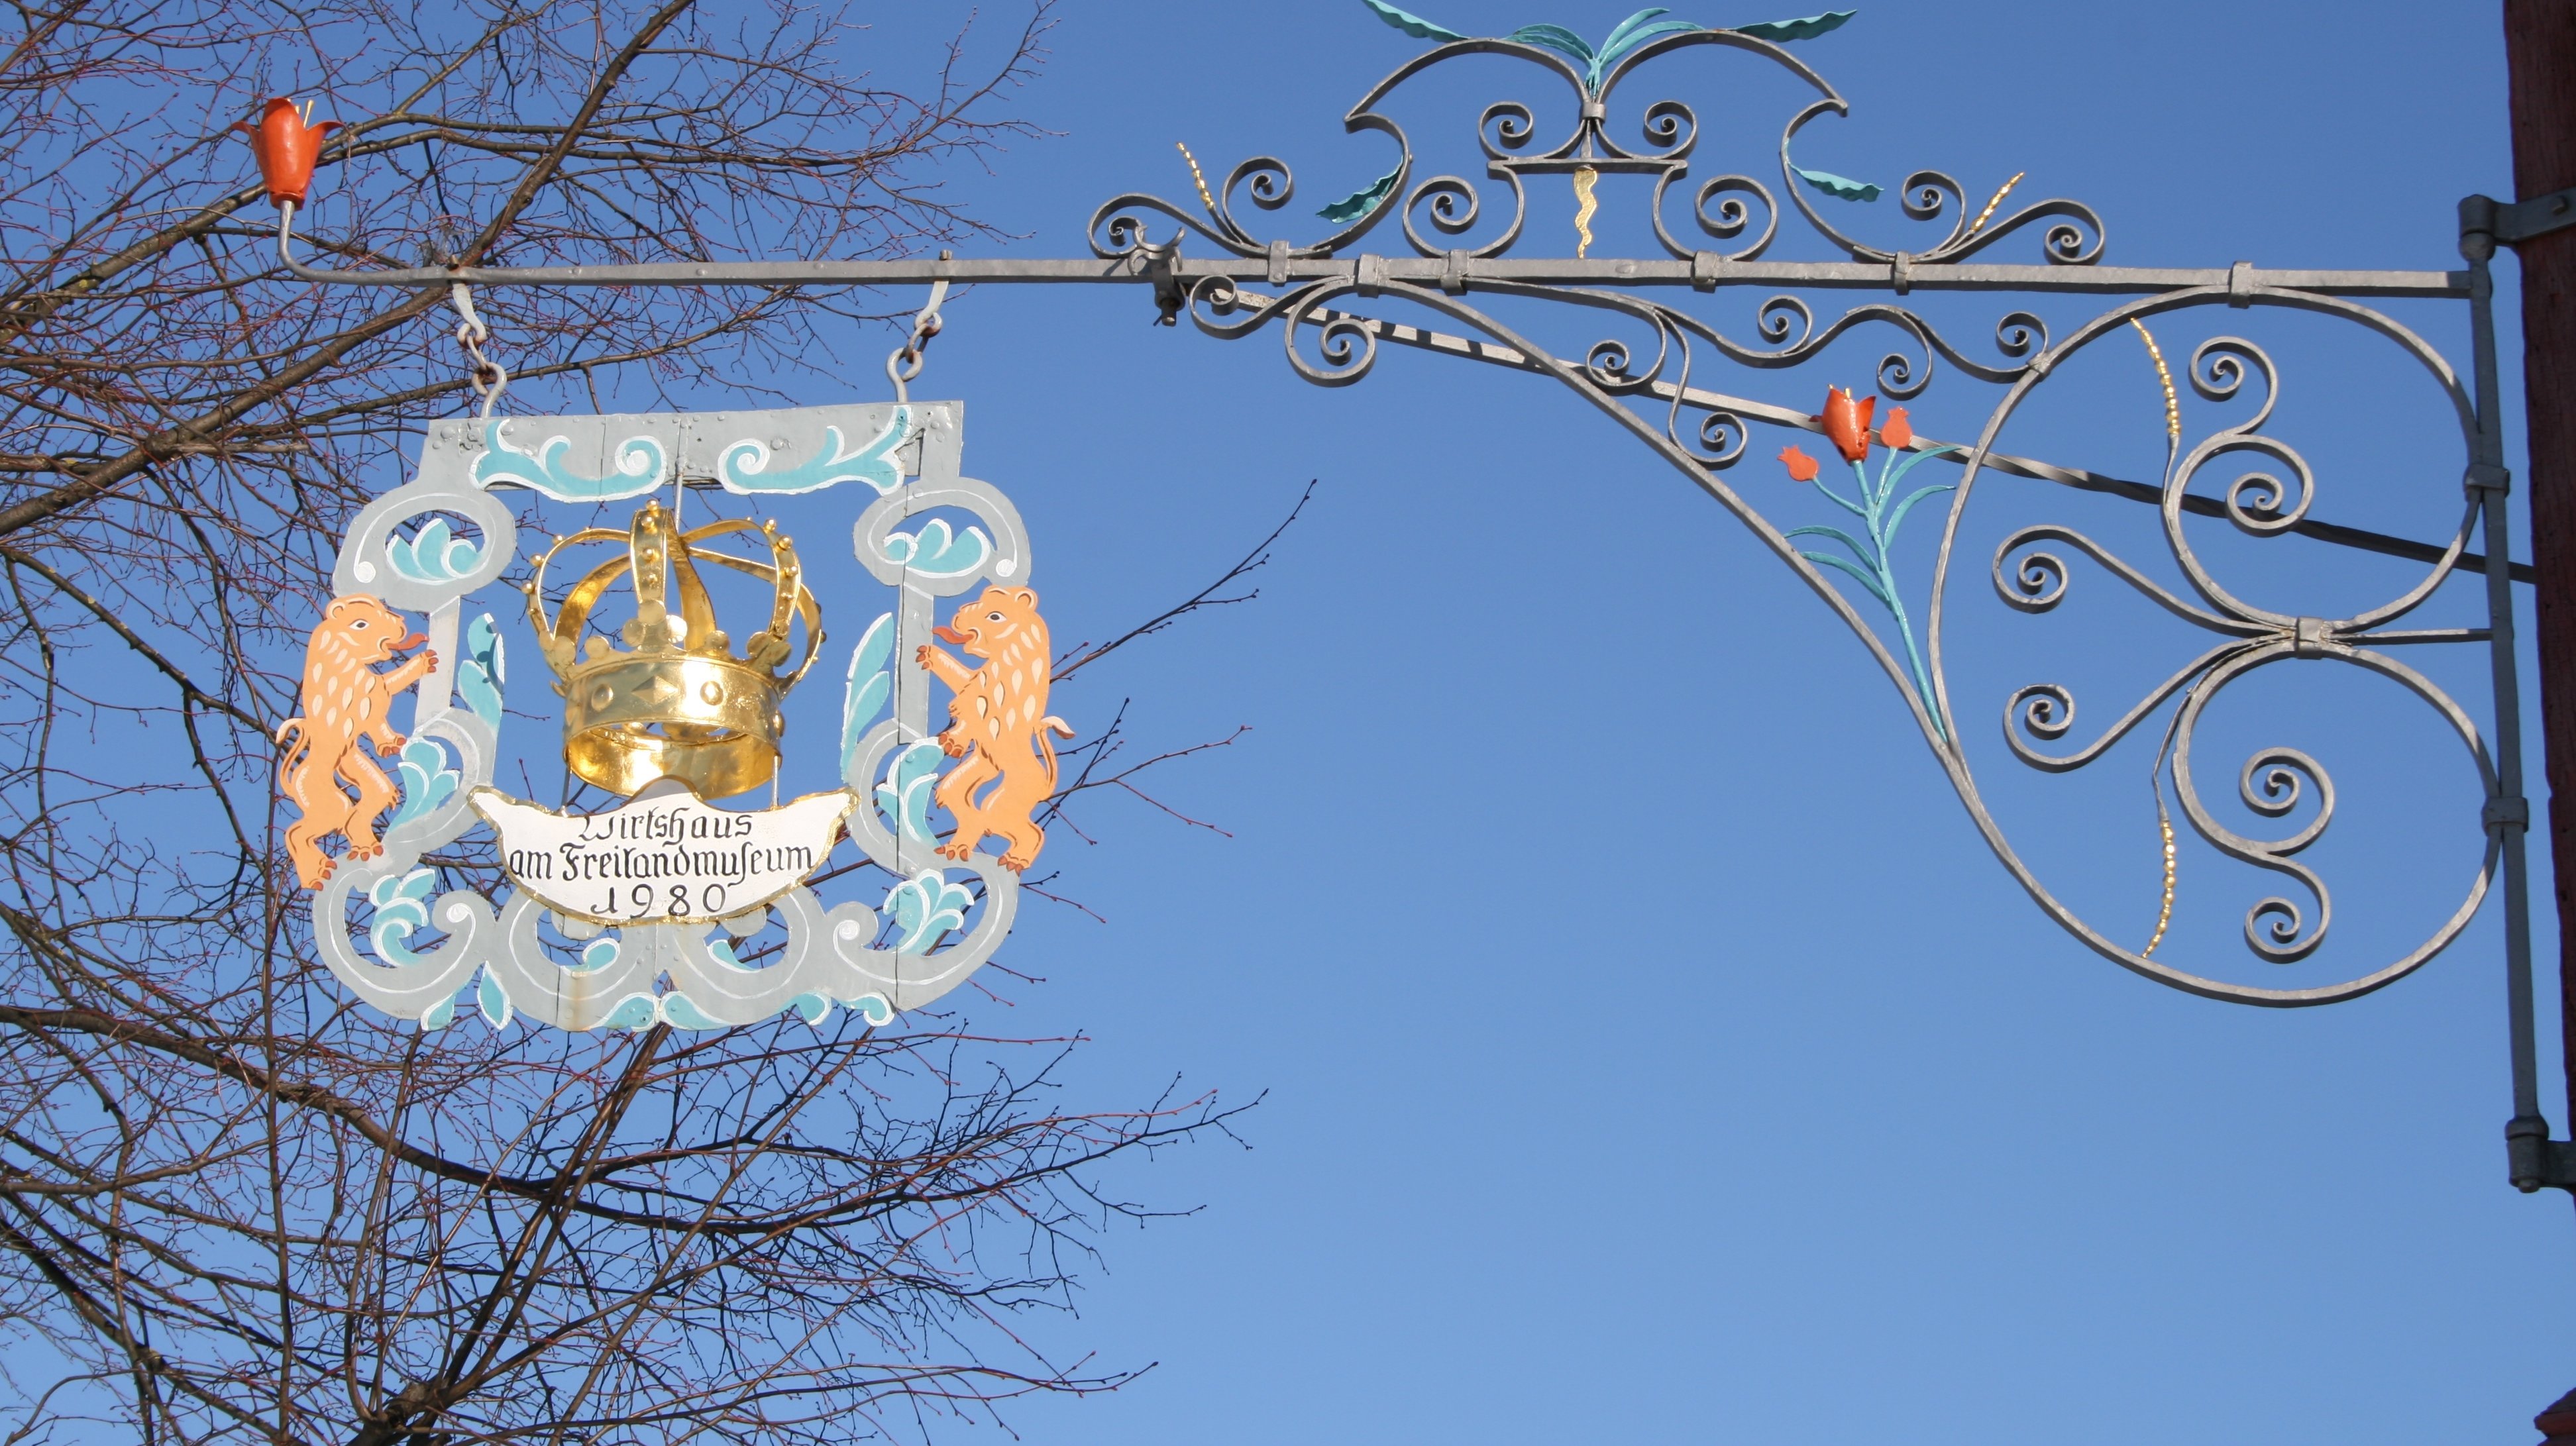 Fotoaufnahme des Auslegers vom Gasthaus zur Krone aus Oberampfrach. Das Nasenschild ist im rechten Winkel an der Mauer befestigt. In der Mitte befindet sich eine Krone, darunter steht „Wirtshaus am Freilandmuseum 1960“. An den Seiten wird das Schild von je einem Löwen gehalten.